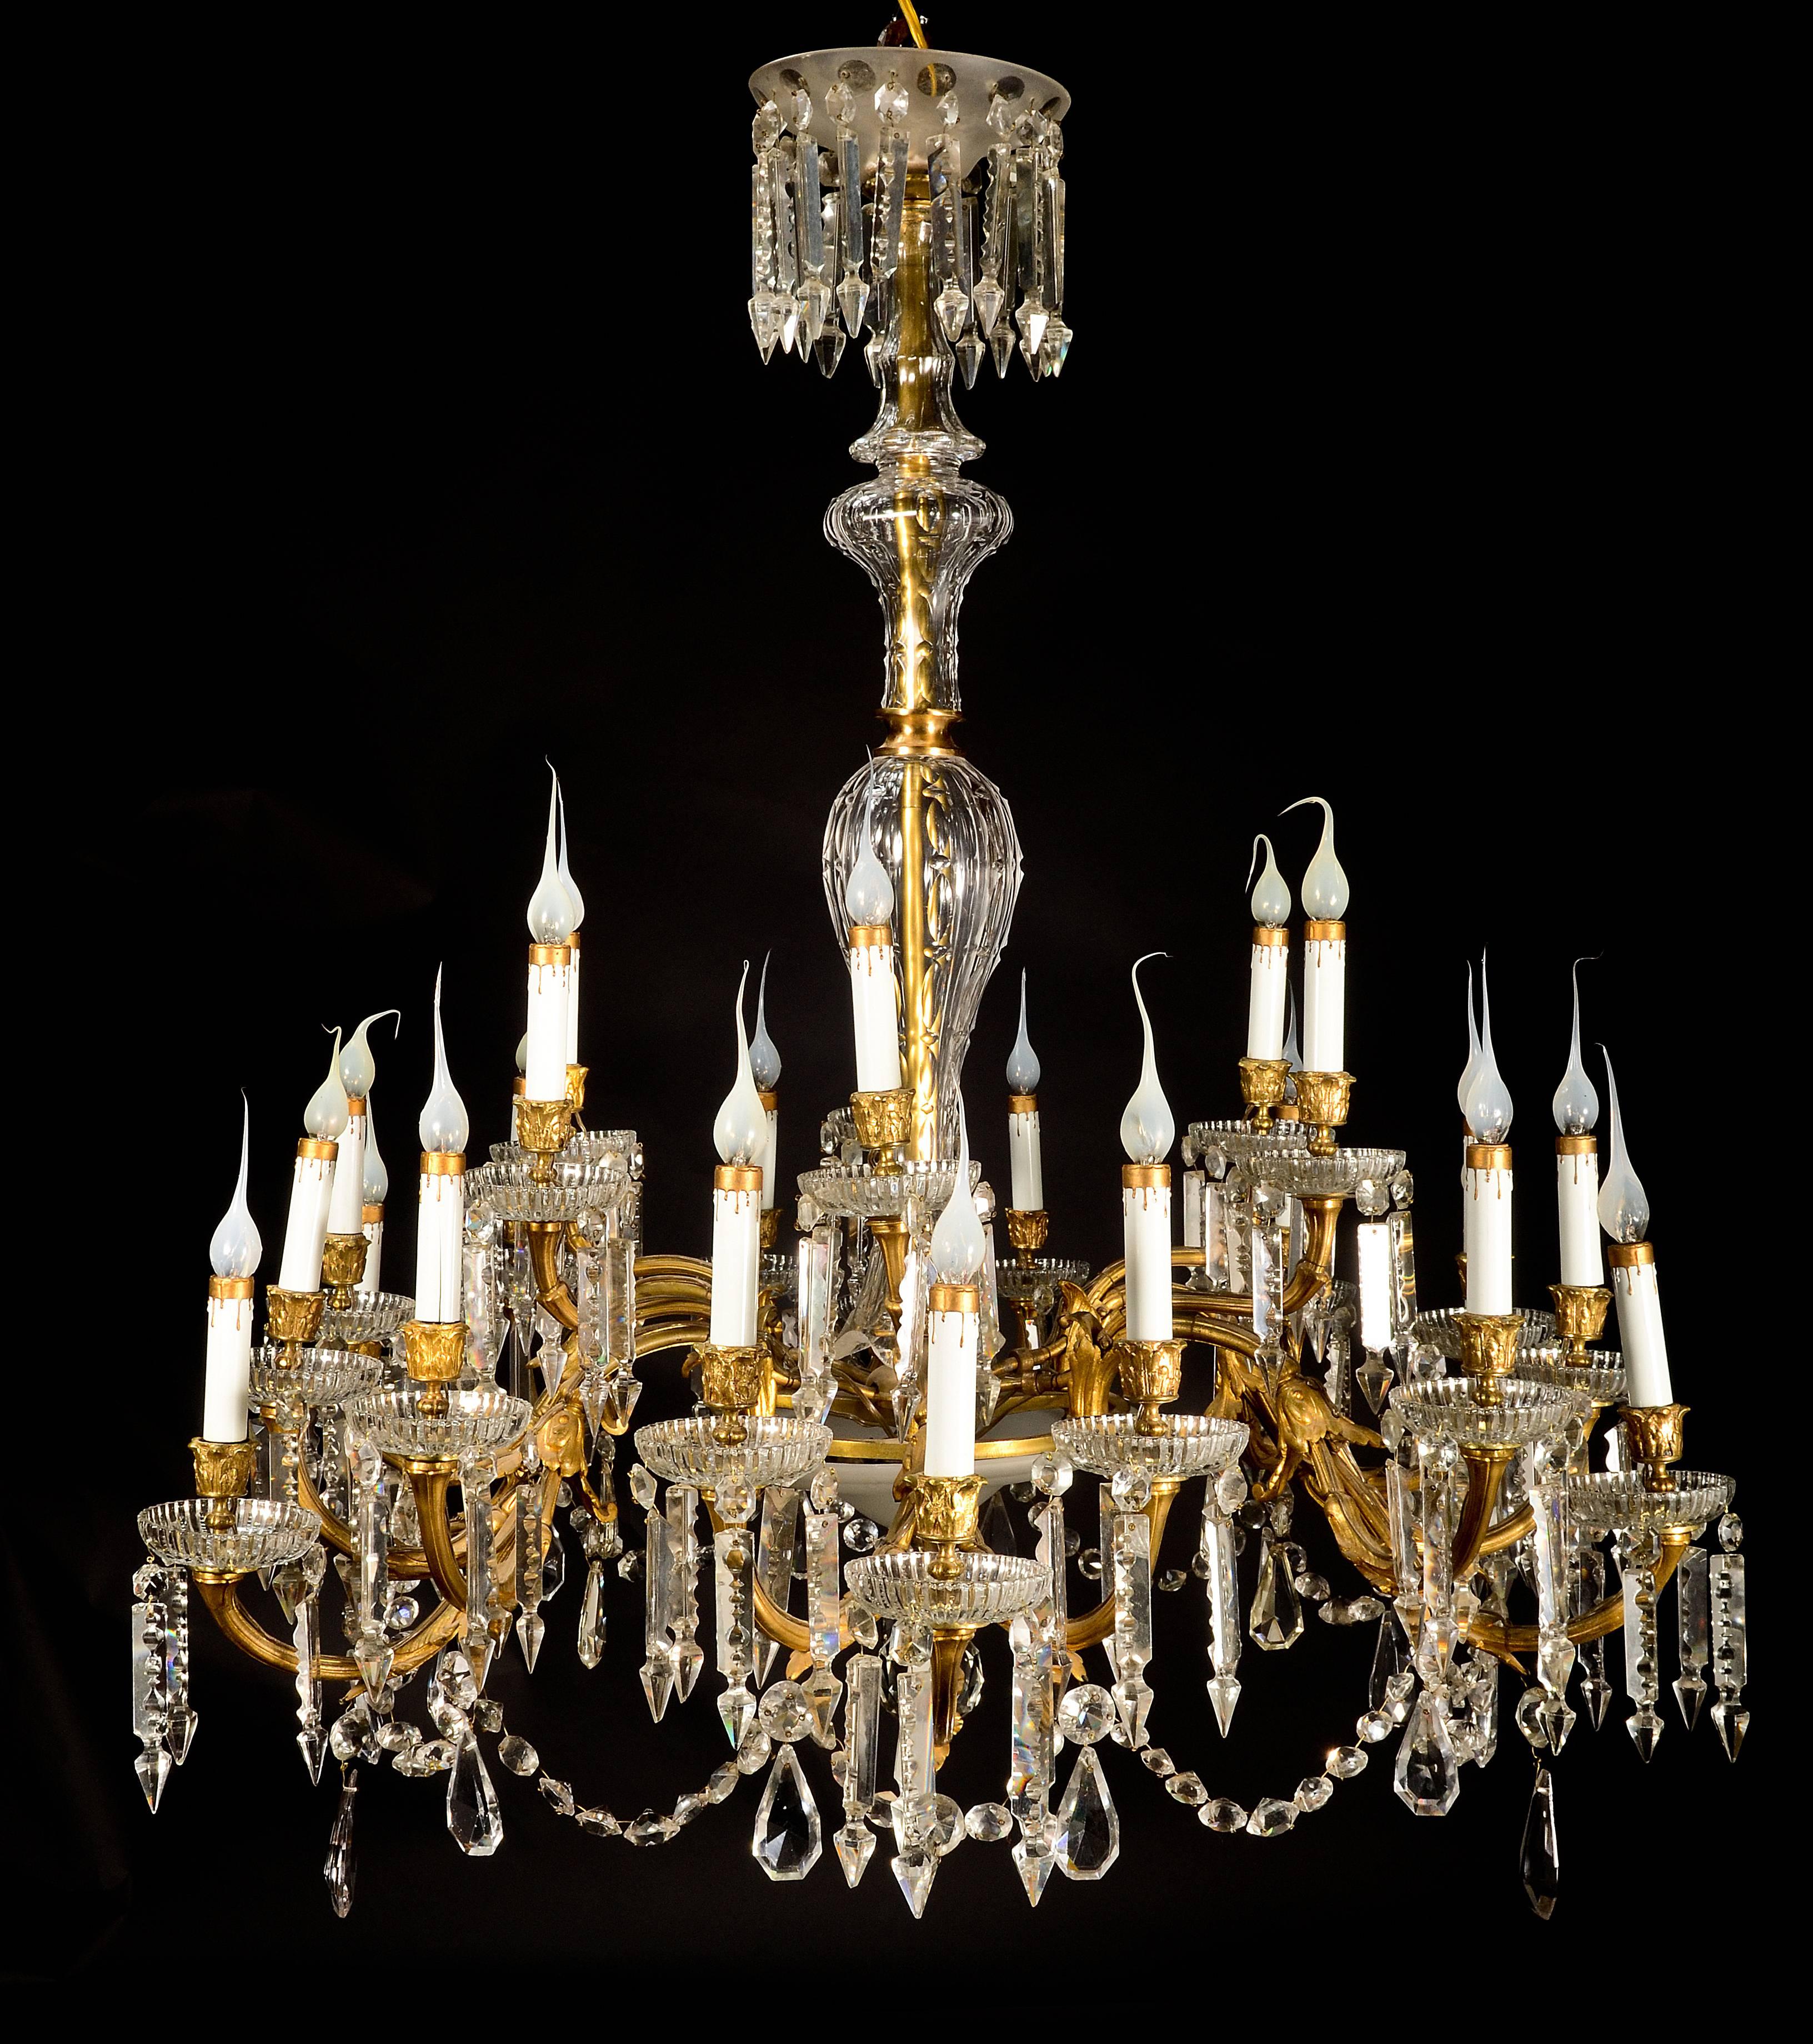 Un grand et superbe lustre ancien de style Louis XVI en bronze doré de Baccarat, verre dépoli et cristal taillé, à 24 bras de lumière, de grande qualité, agrémenté de bolbes, prismes et chaînes en cristal taillé et d'un arbre central en cristal